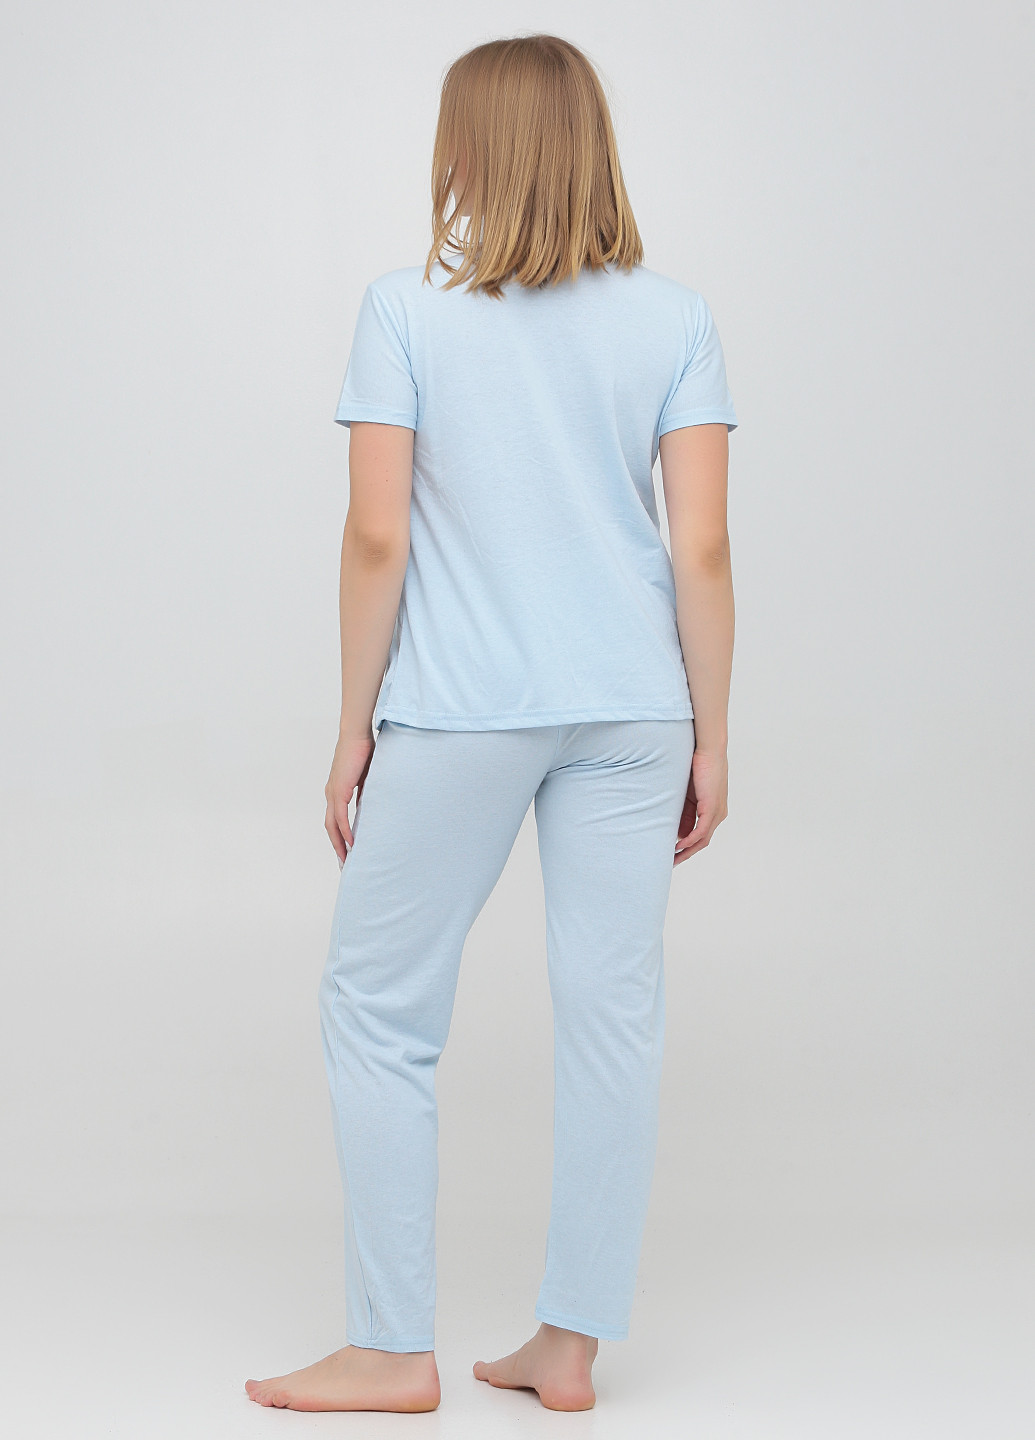 Голубая всесезон пижама (футболка, брюки) футболка + брюки Carla Mara